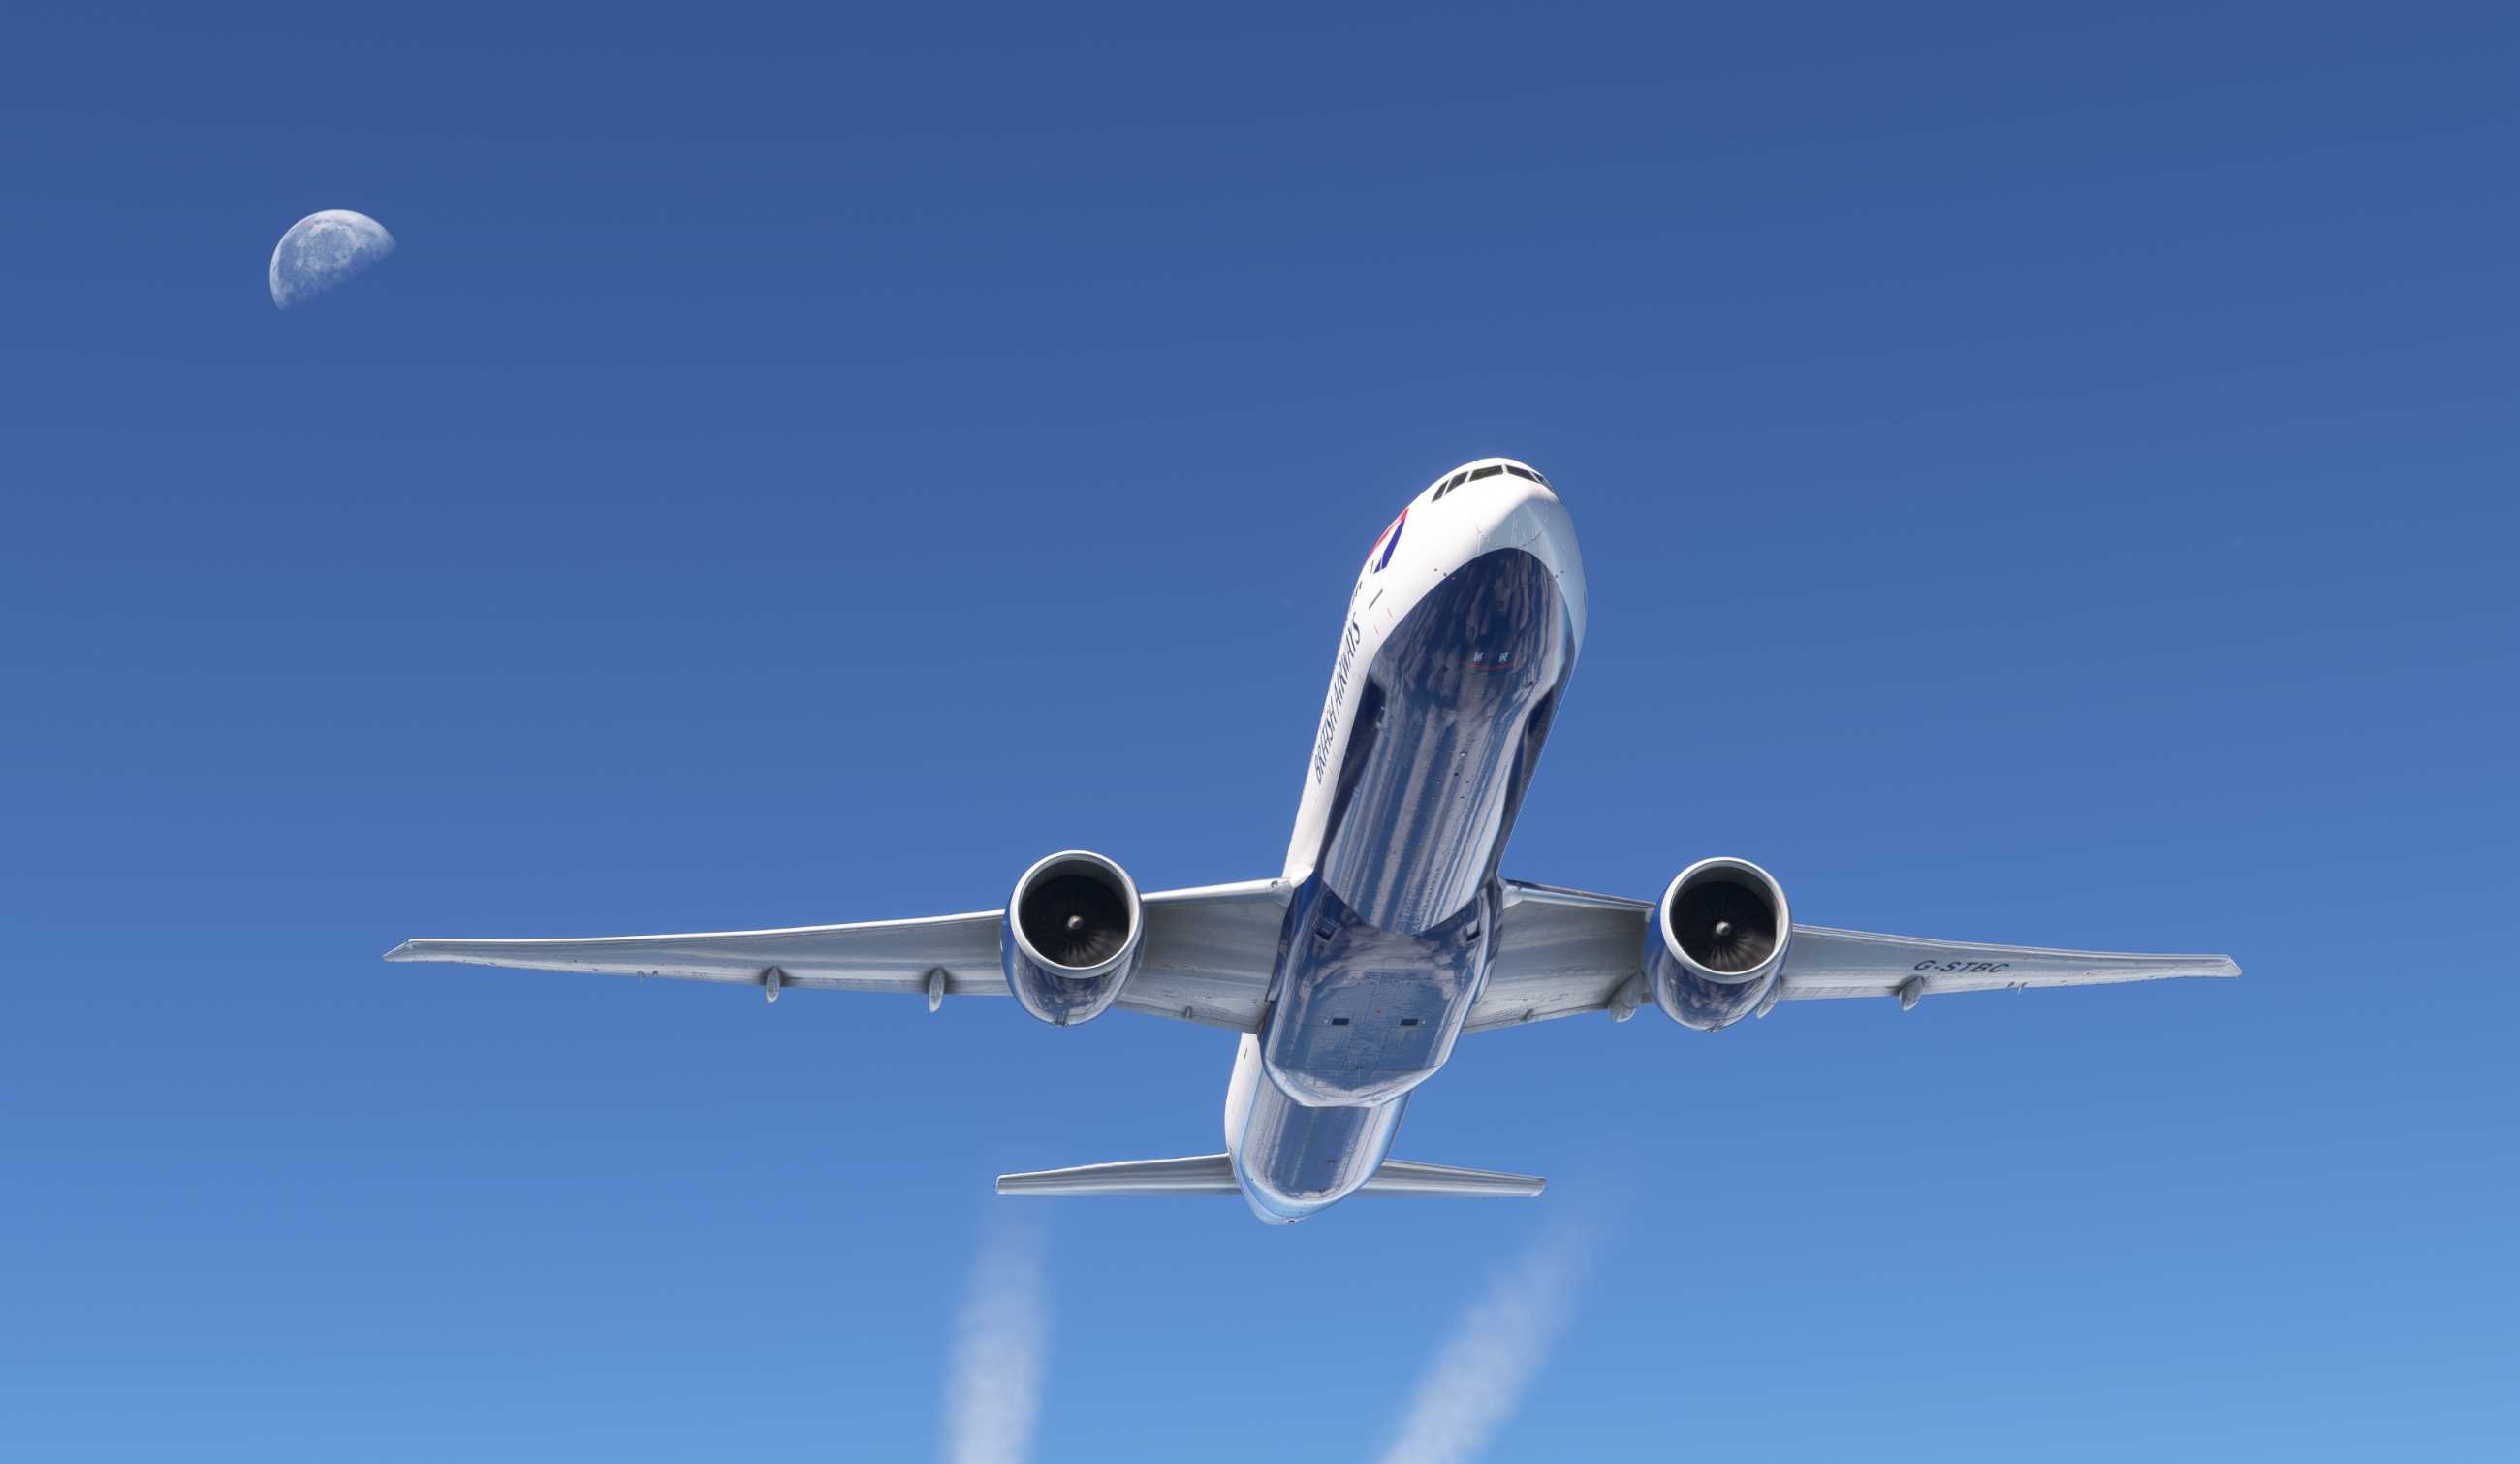 【MSFS】777-300ER KJFK-EGLL-7356 